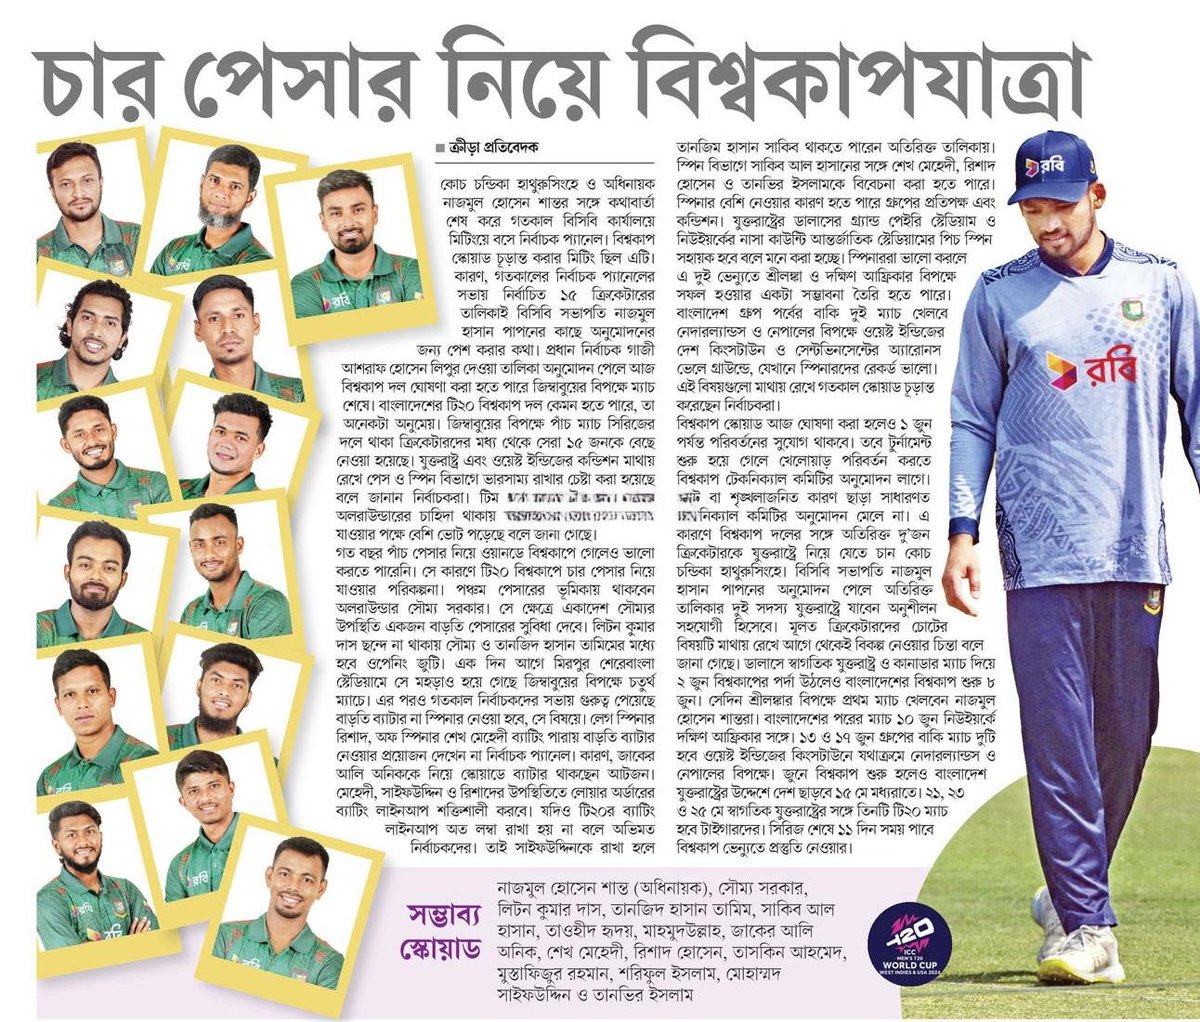 চার পেসার নিয়ে বিশ্বকাপযাত্রা... #SportsNews #Bangladesh #Newspaper #BangladeshCricket #BDCricket @BCBtigers